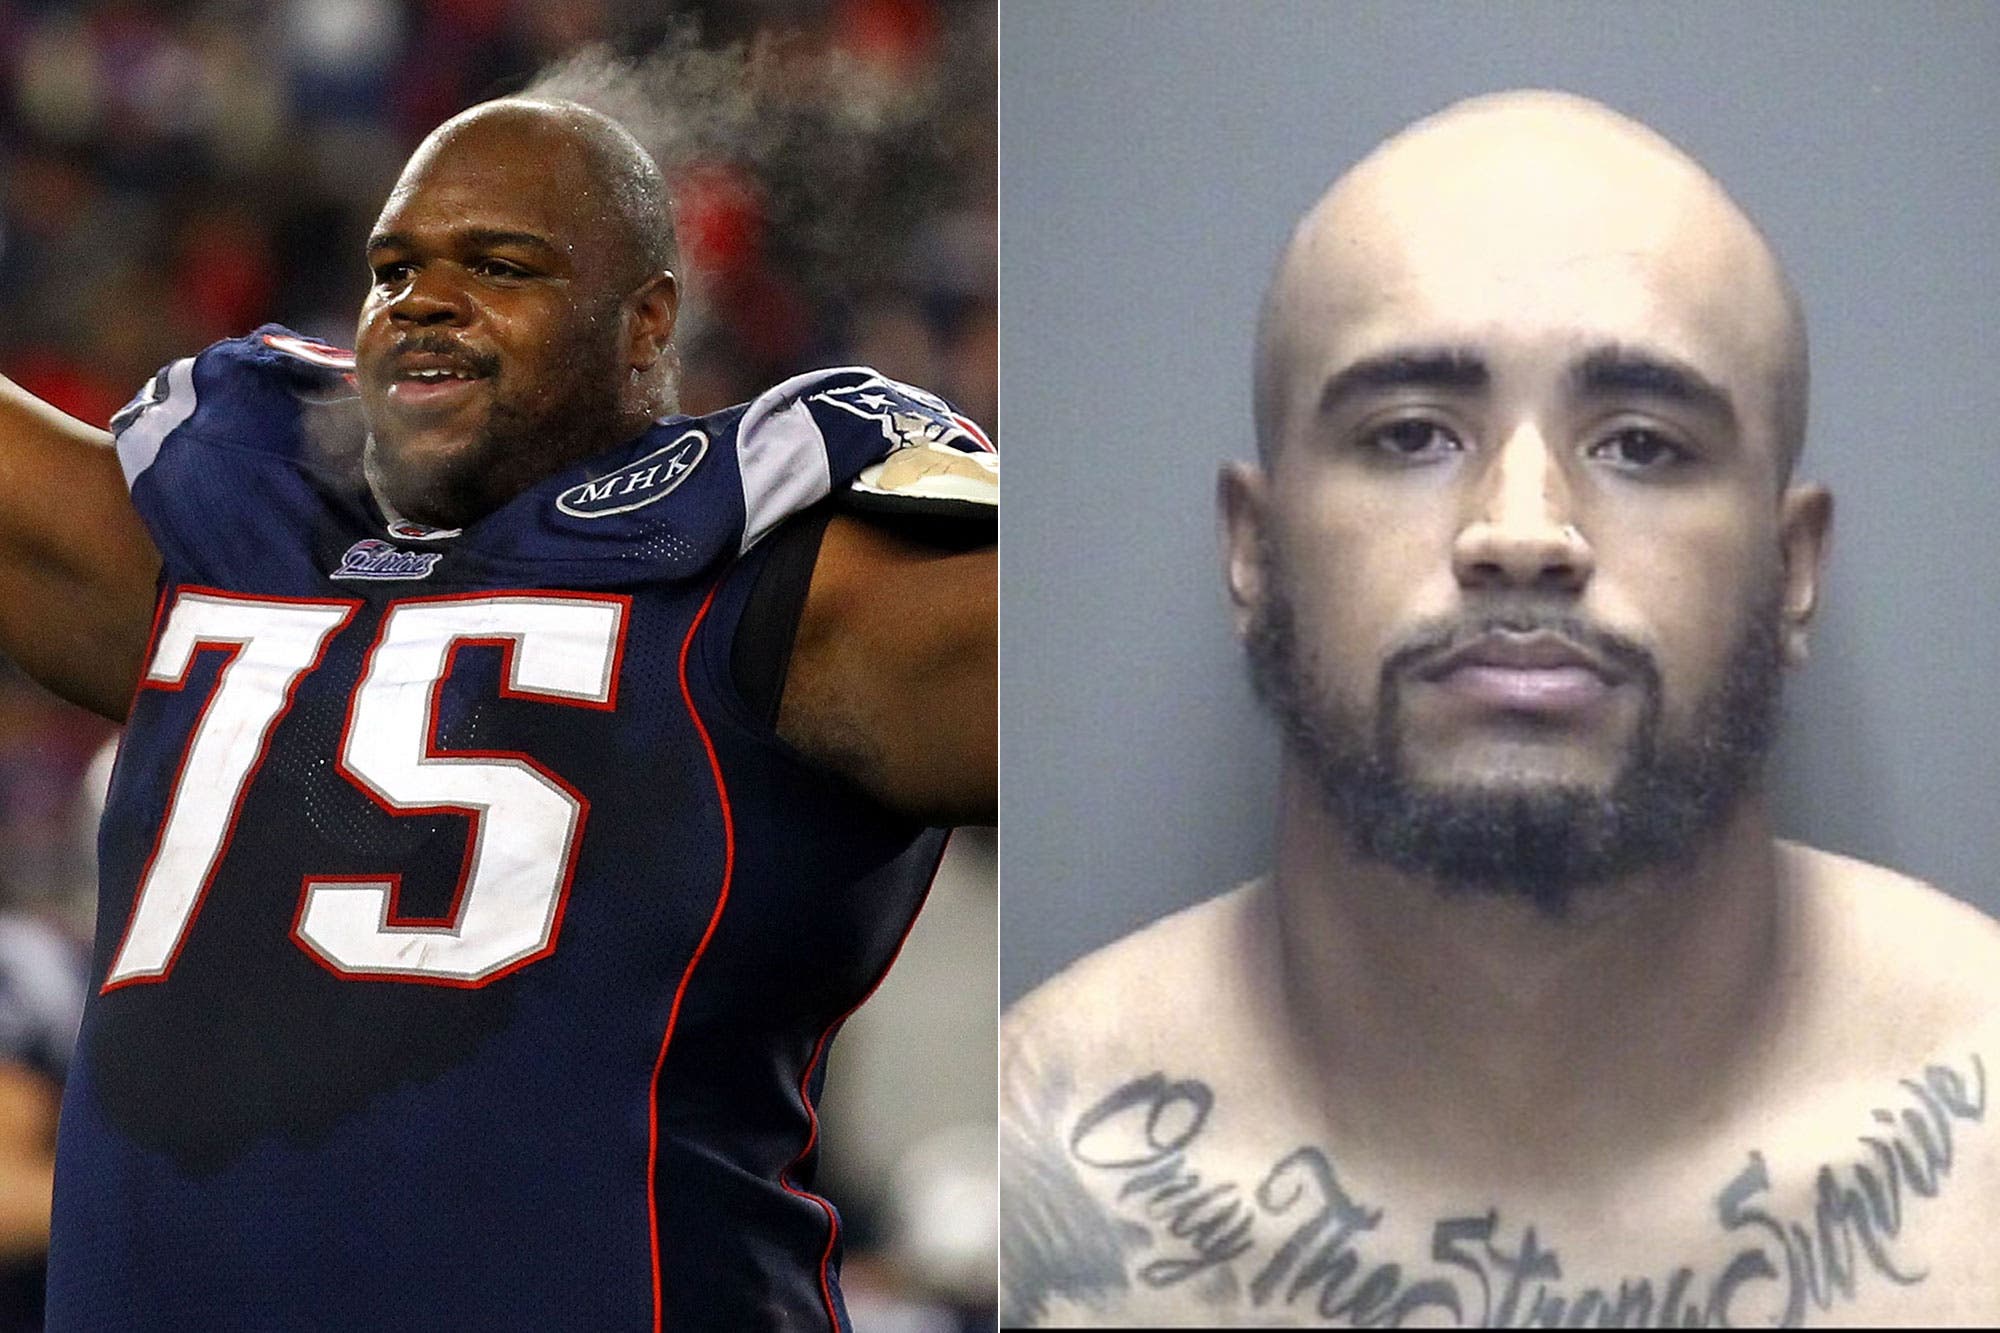 Hijo de exjugador de la NFL recibe cargos por robarle anillos del Super Bowl